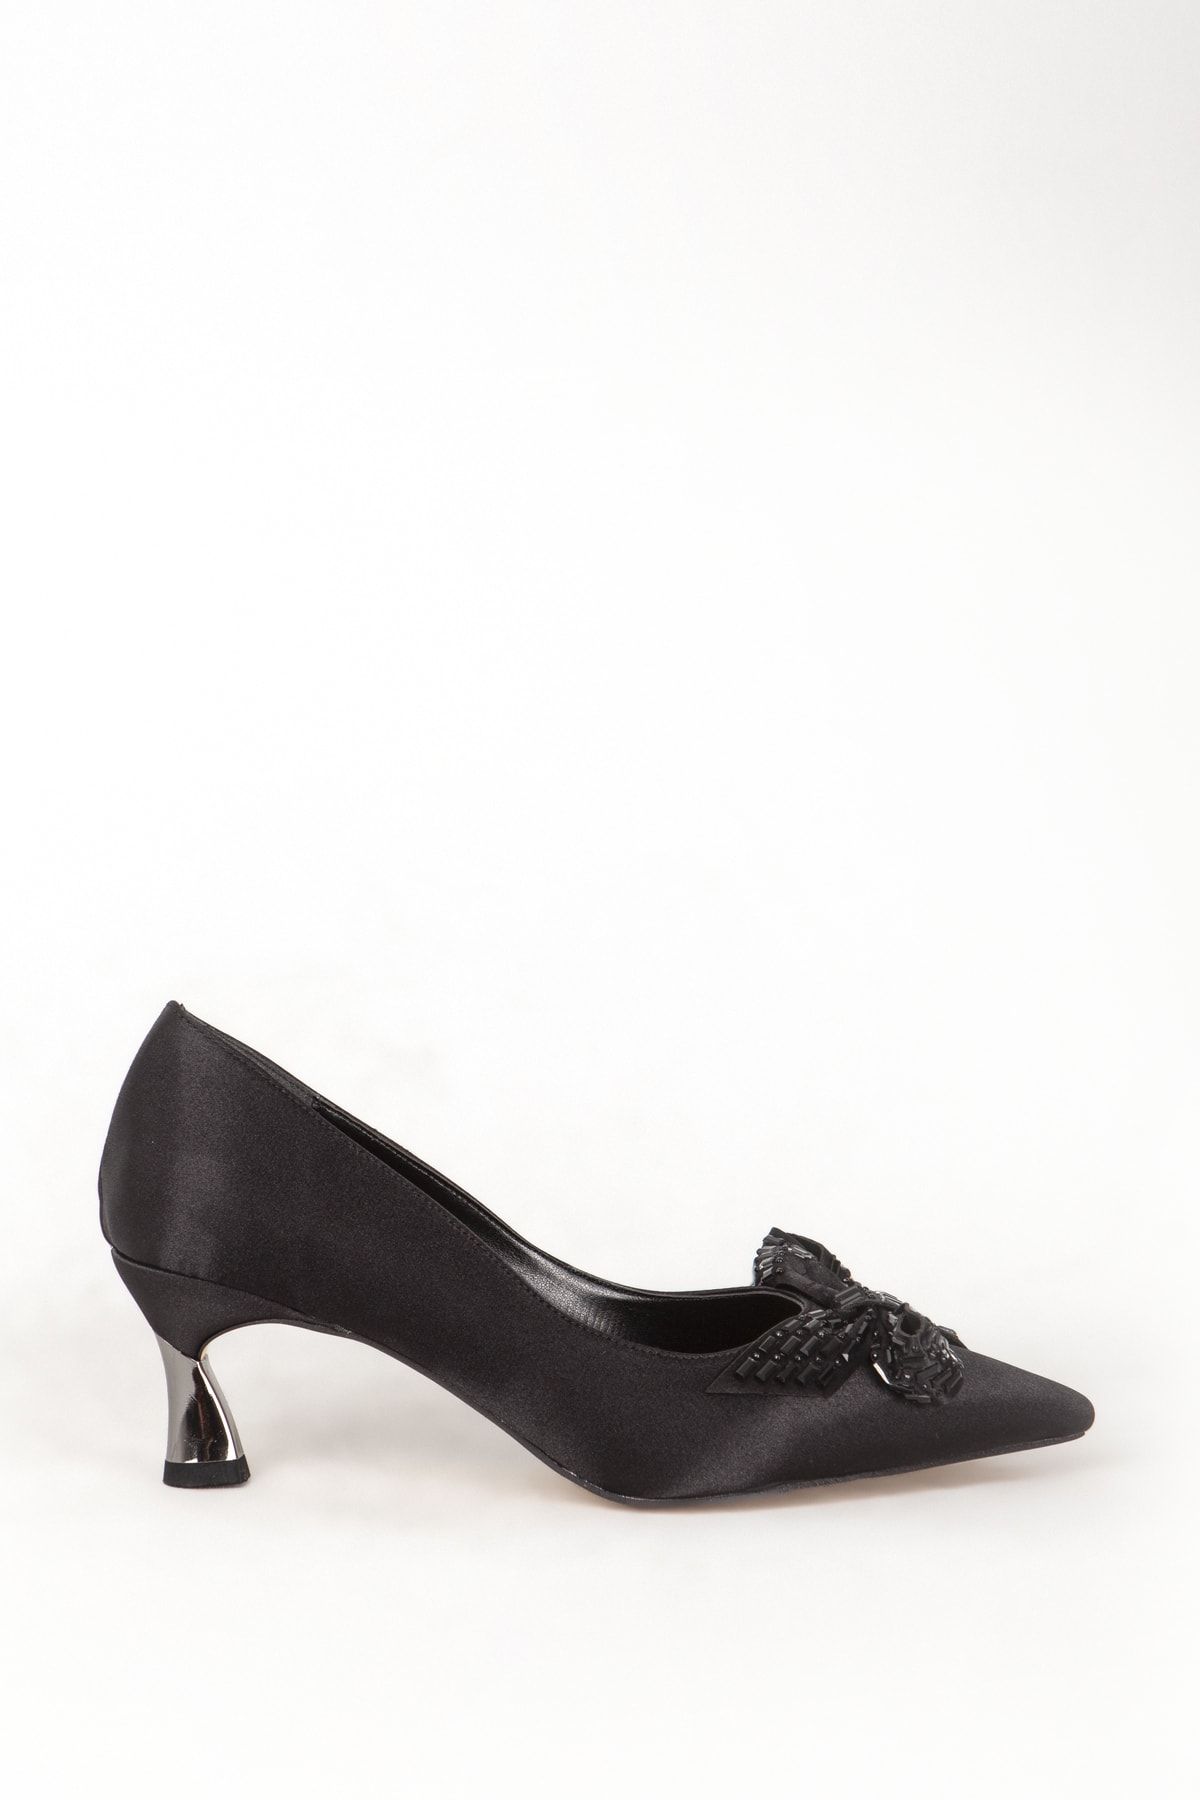 Guja 811 Abiye Kumaşlı Kadın Topuklu Ayakkabı Siyah